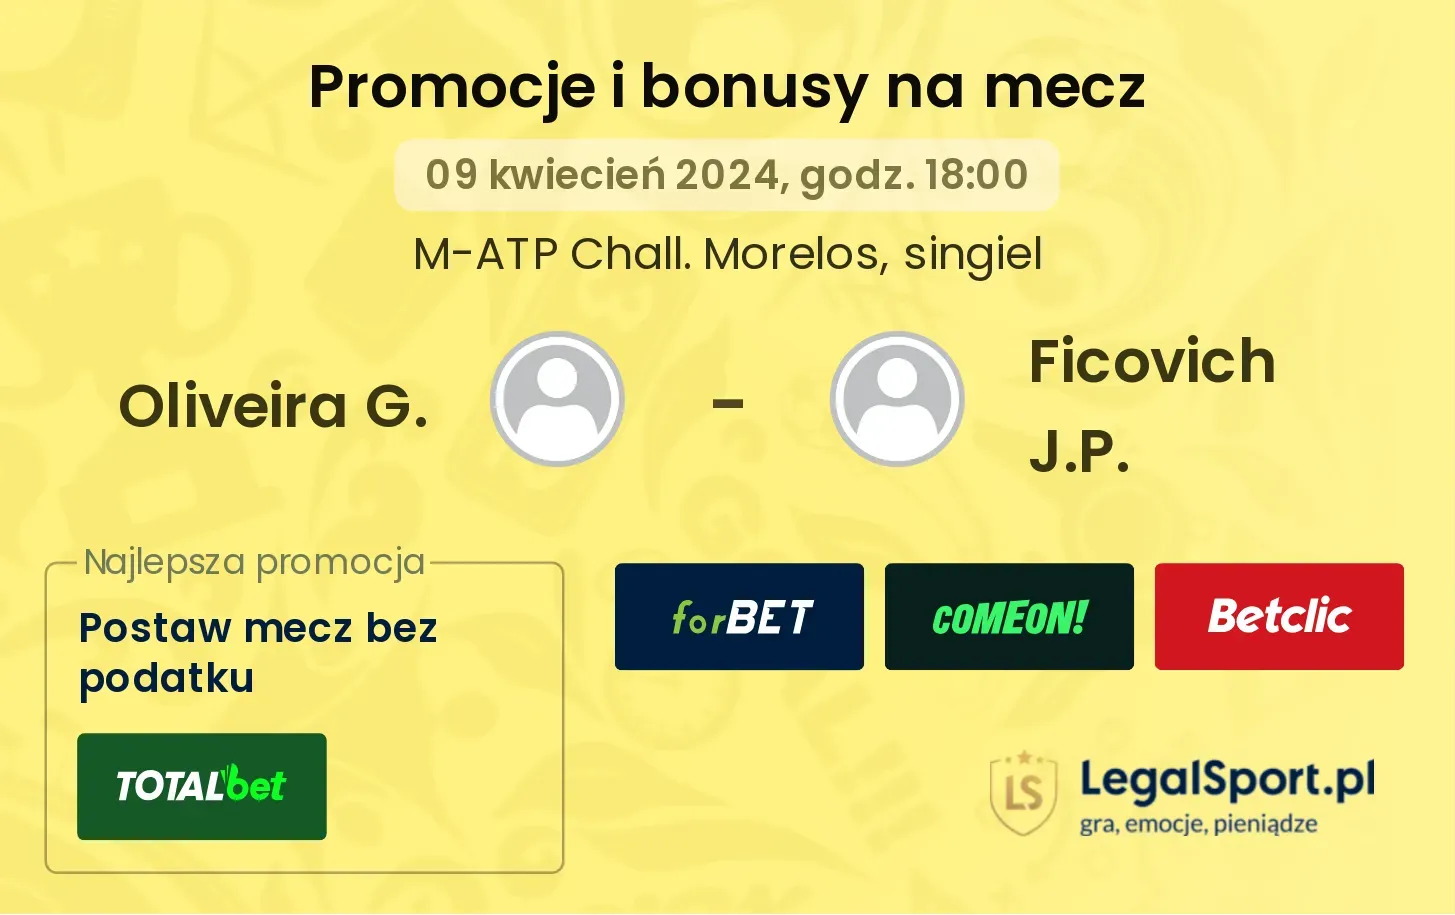 Oliveira G. - Ficovich J.P. promocje bonusy na mecz